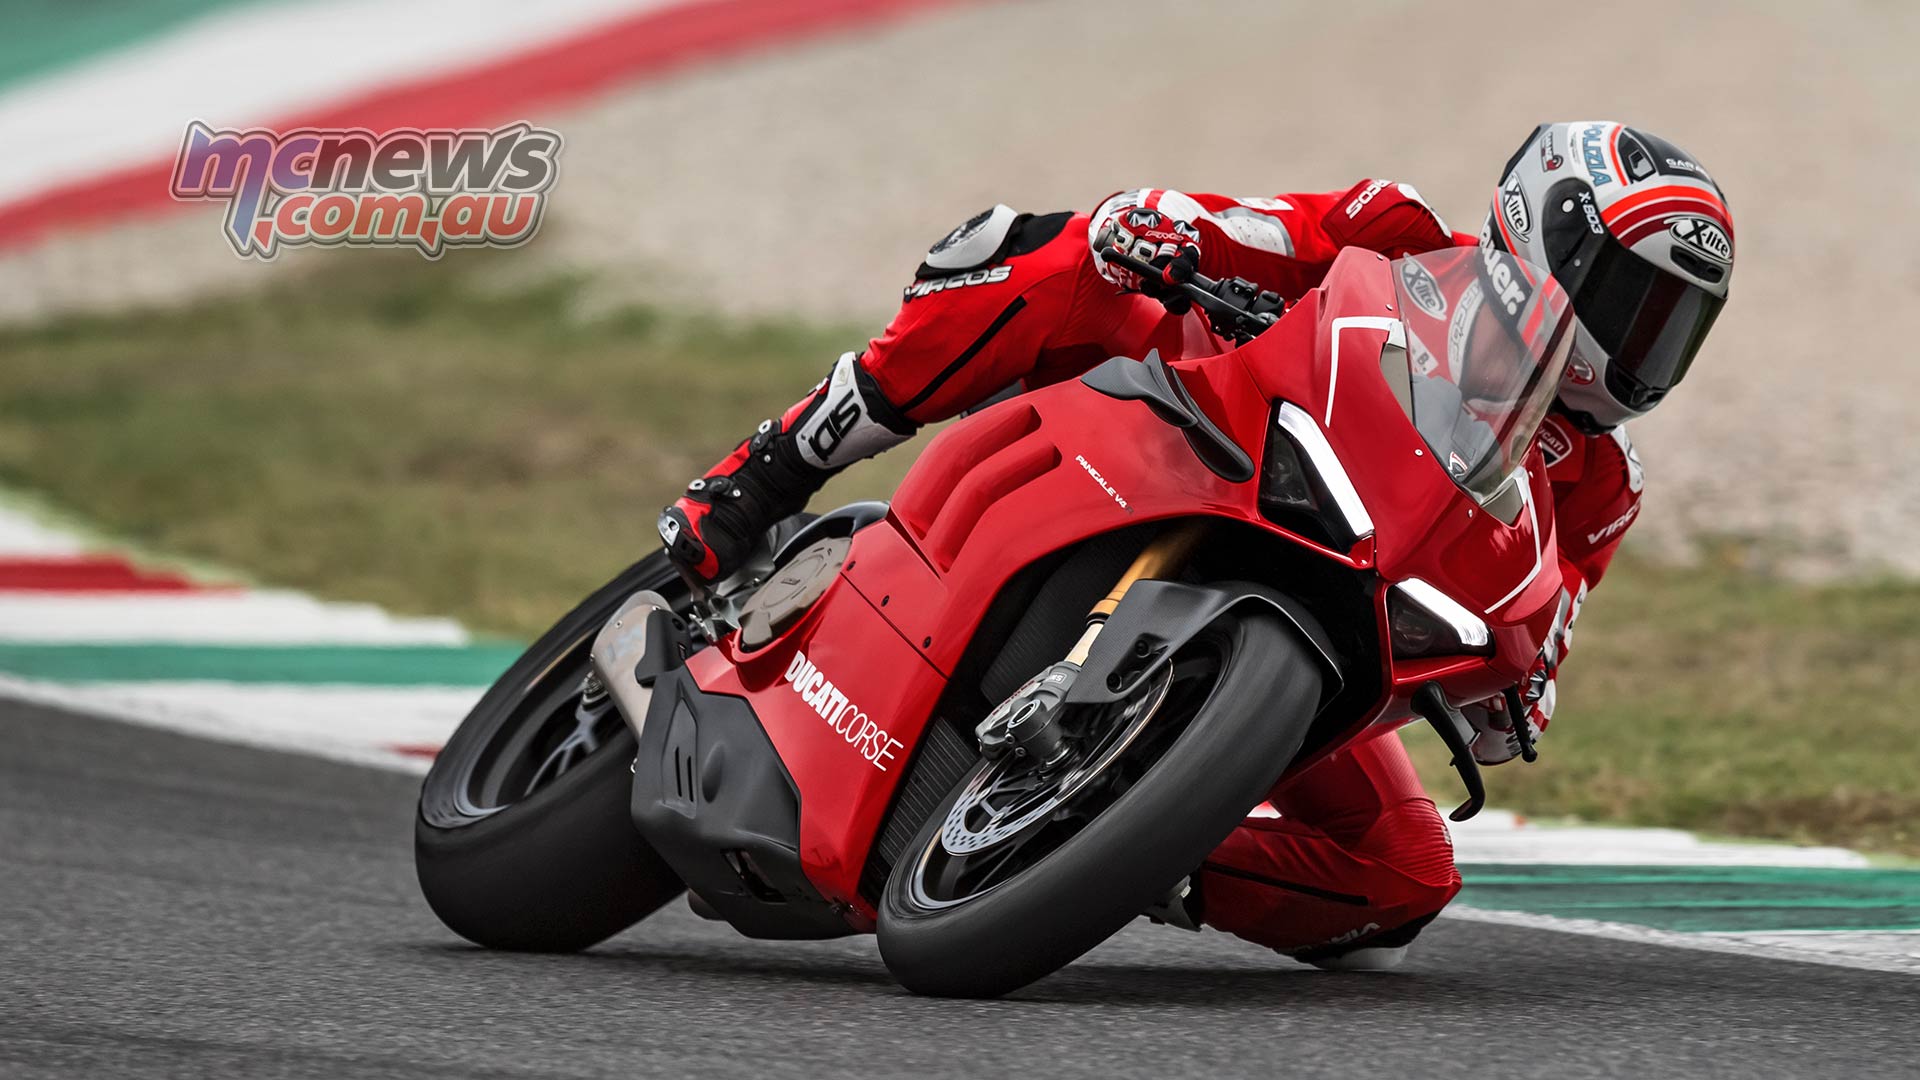 Ducati Panigale V4 R 998cc Racer More Tech Details